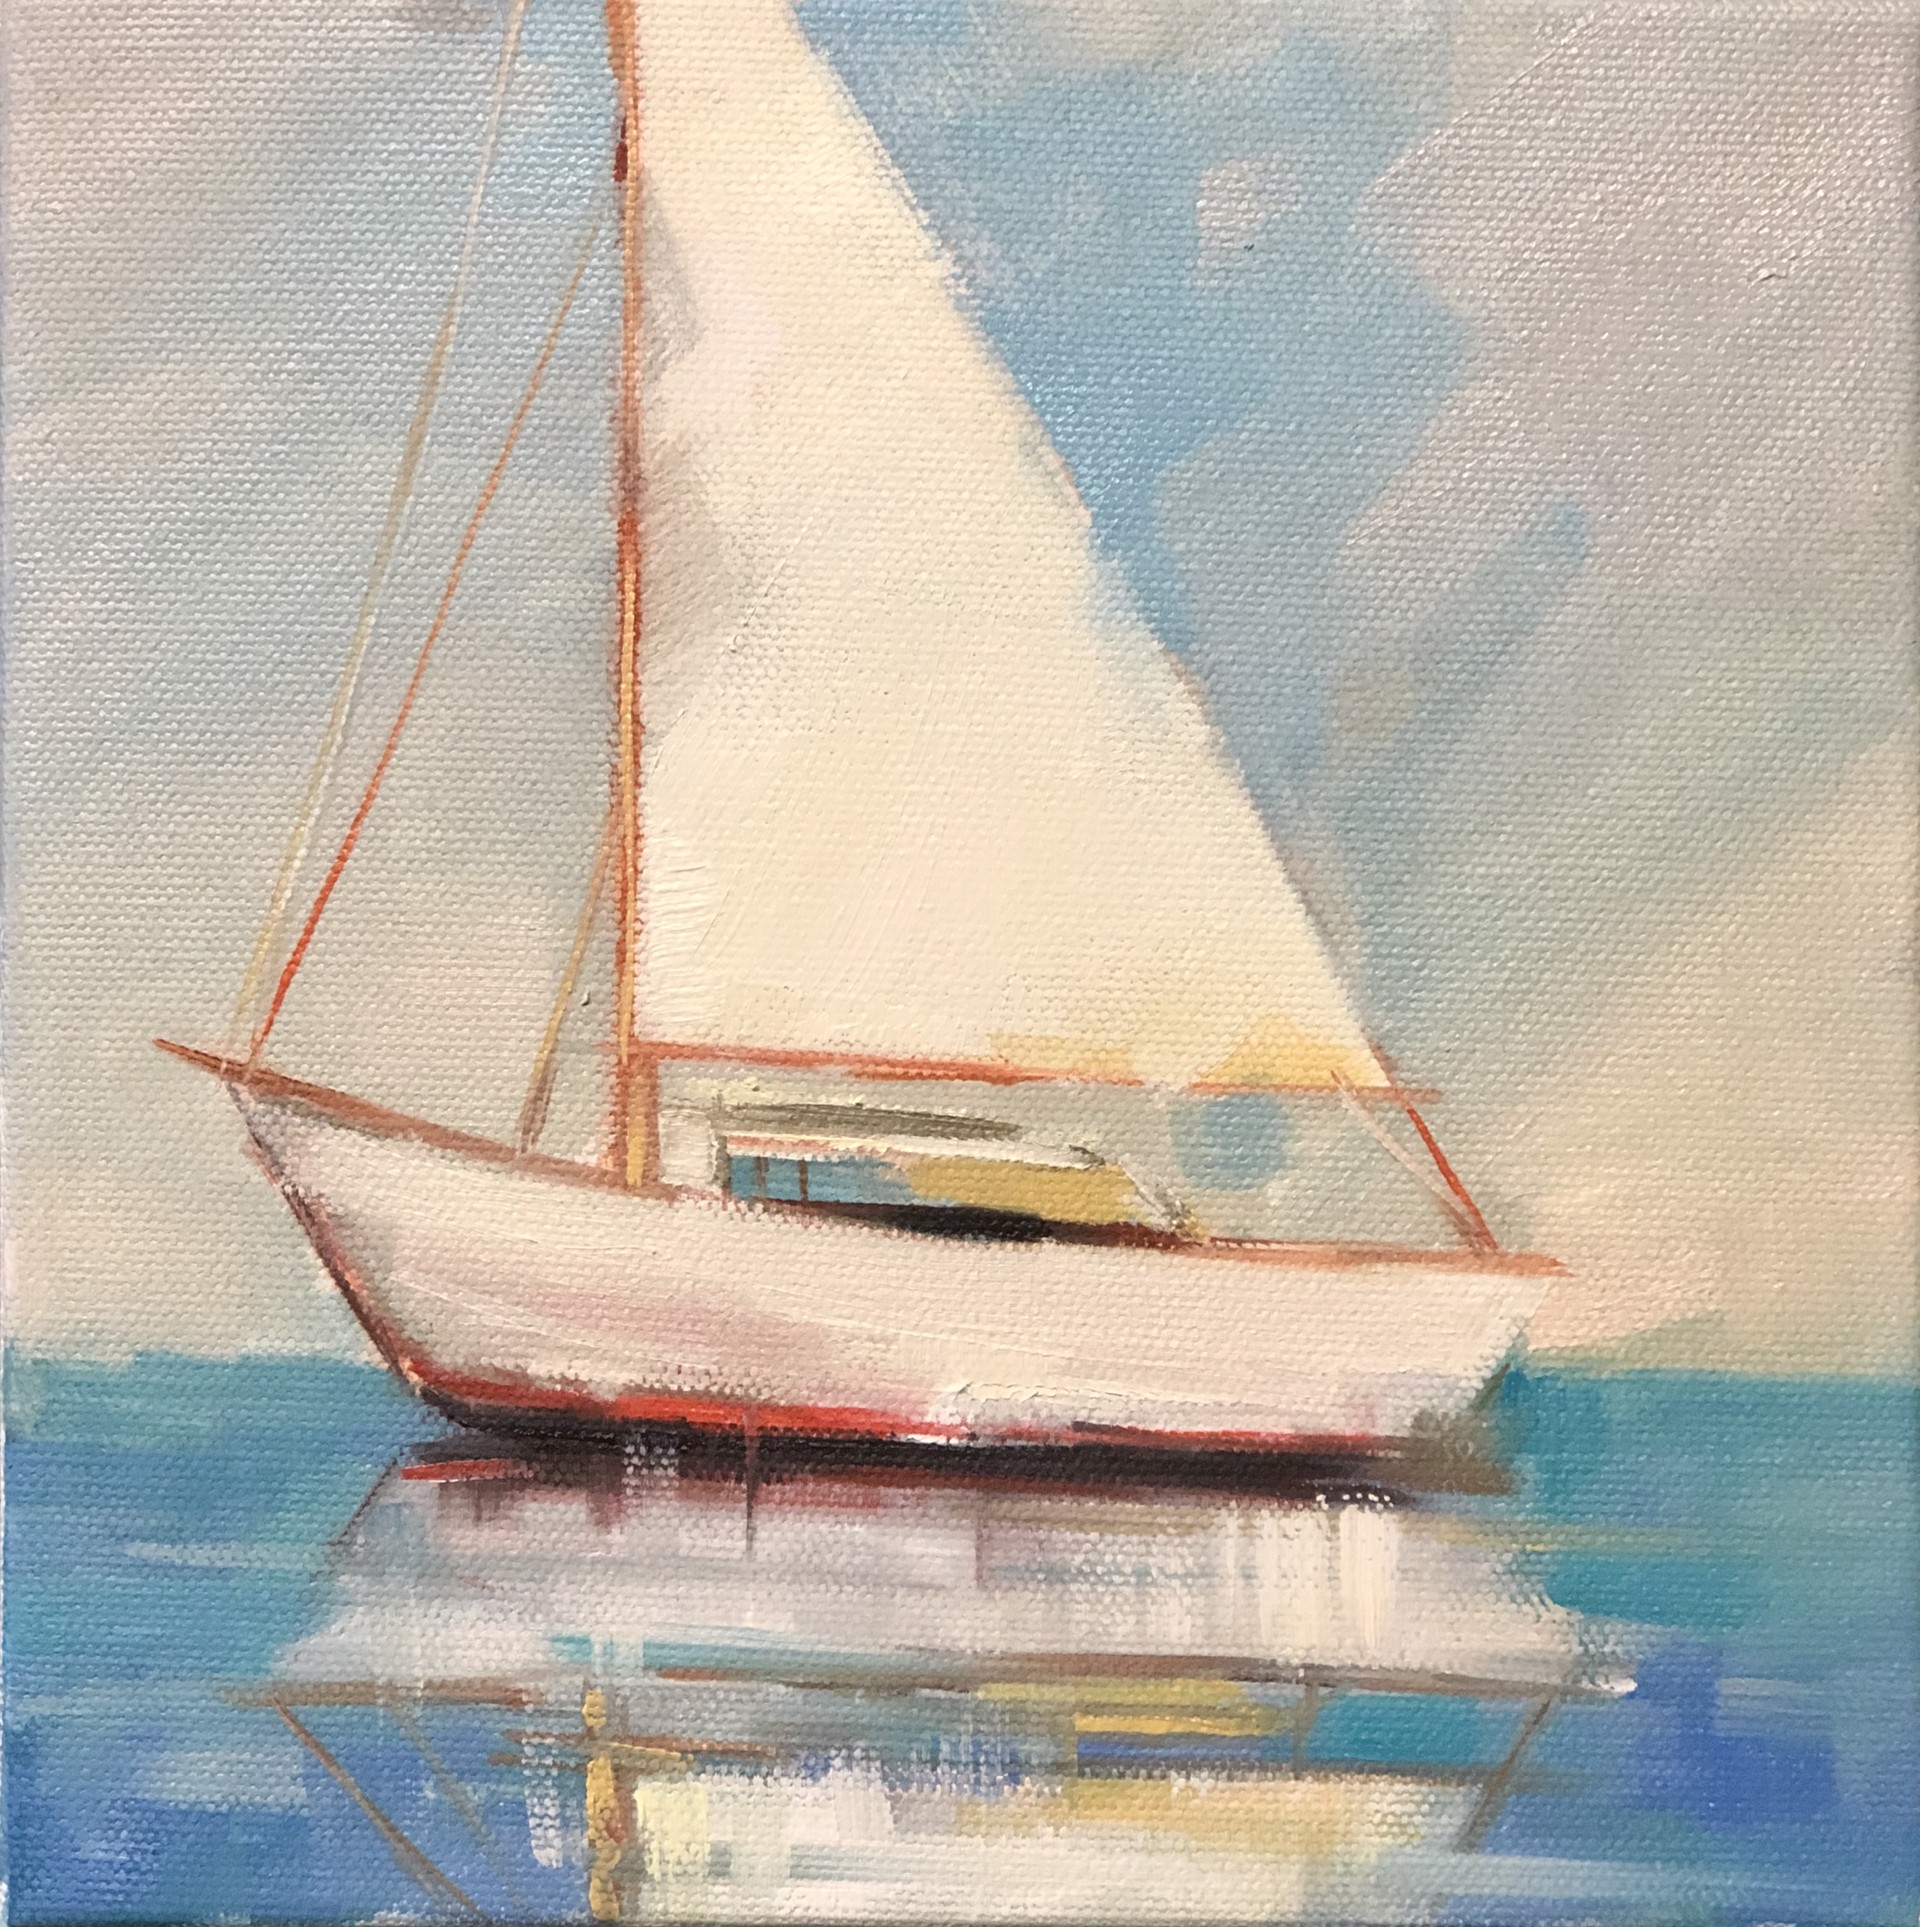 Smooth Sailing by Sharmila Roy